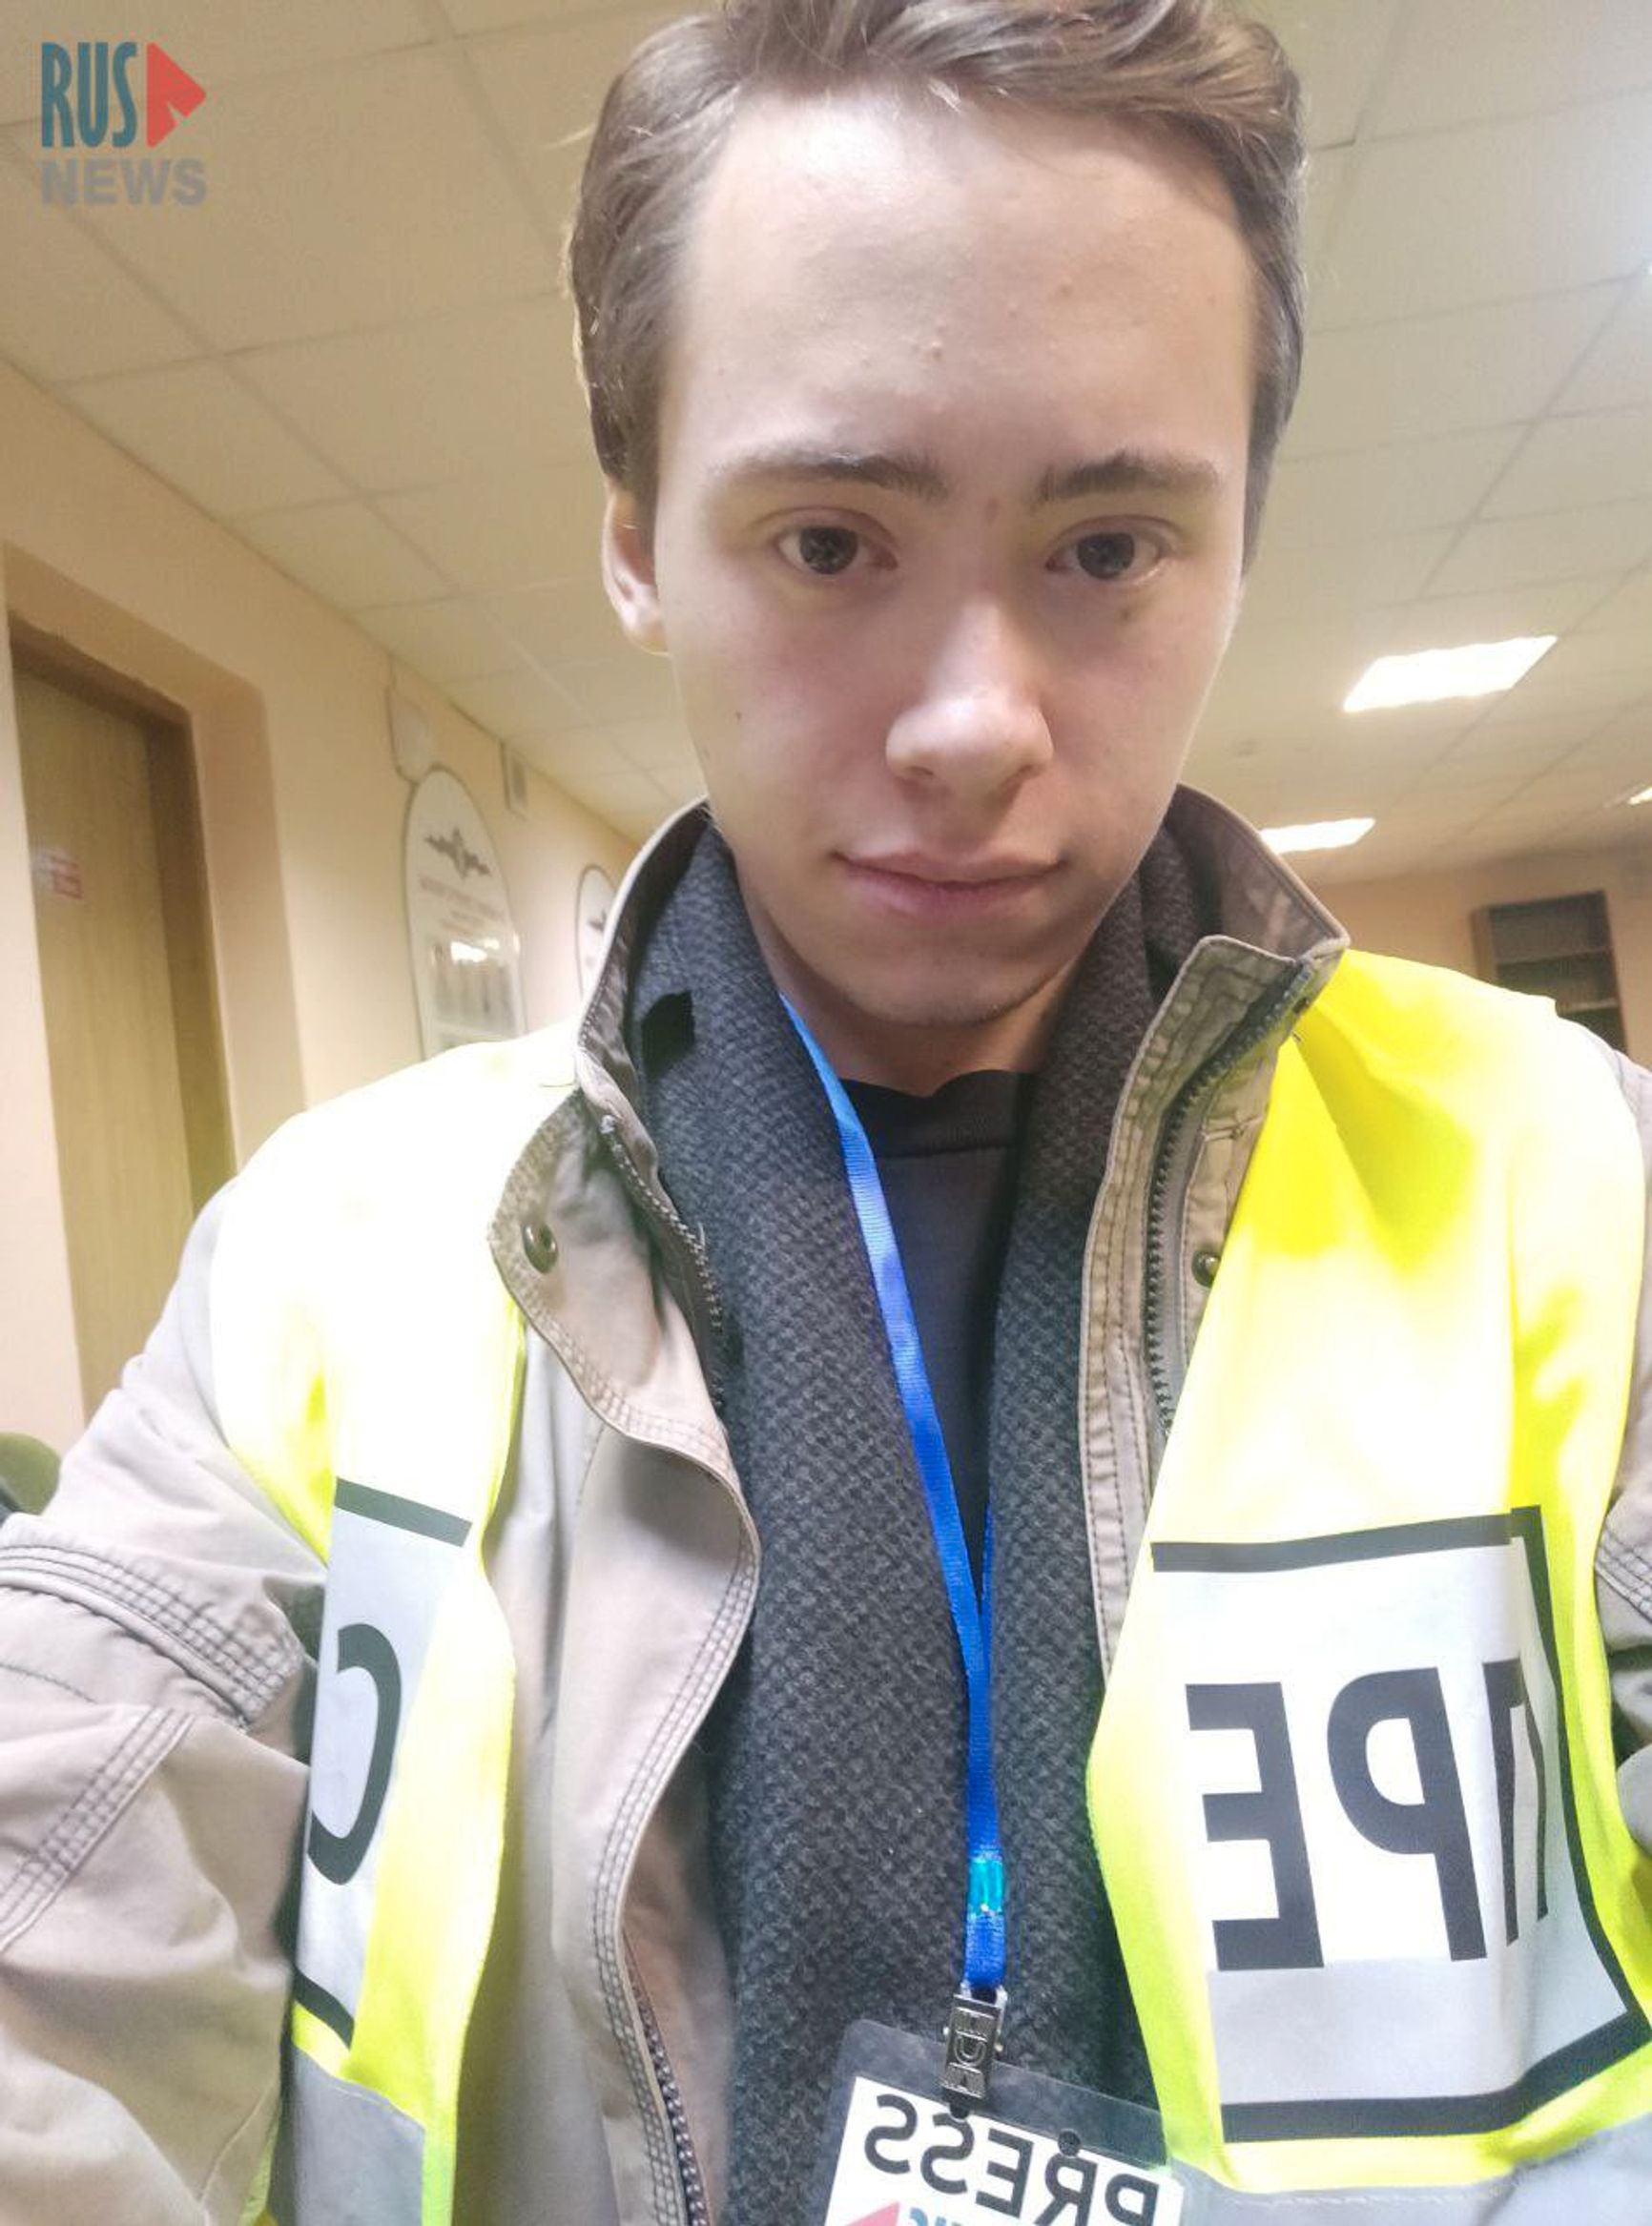 В Архангельске задержали журналиста, несмотря на редзадание и жилет прессы. Ему вручили повестку